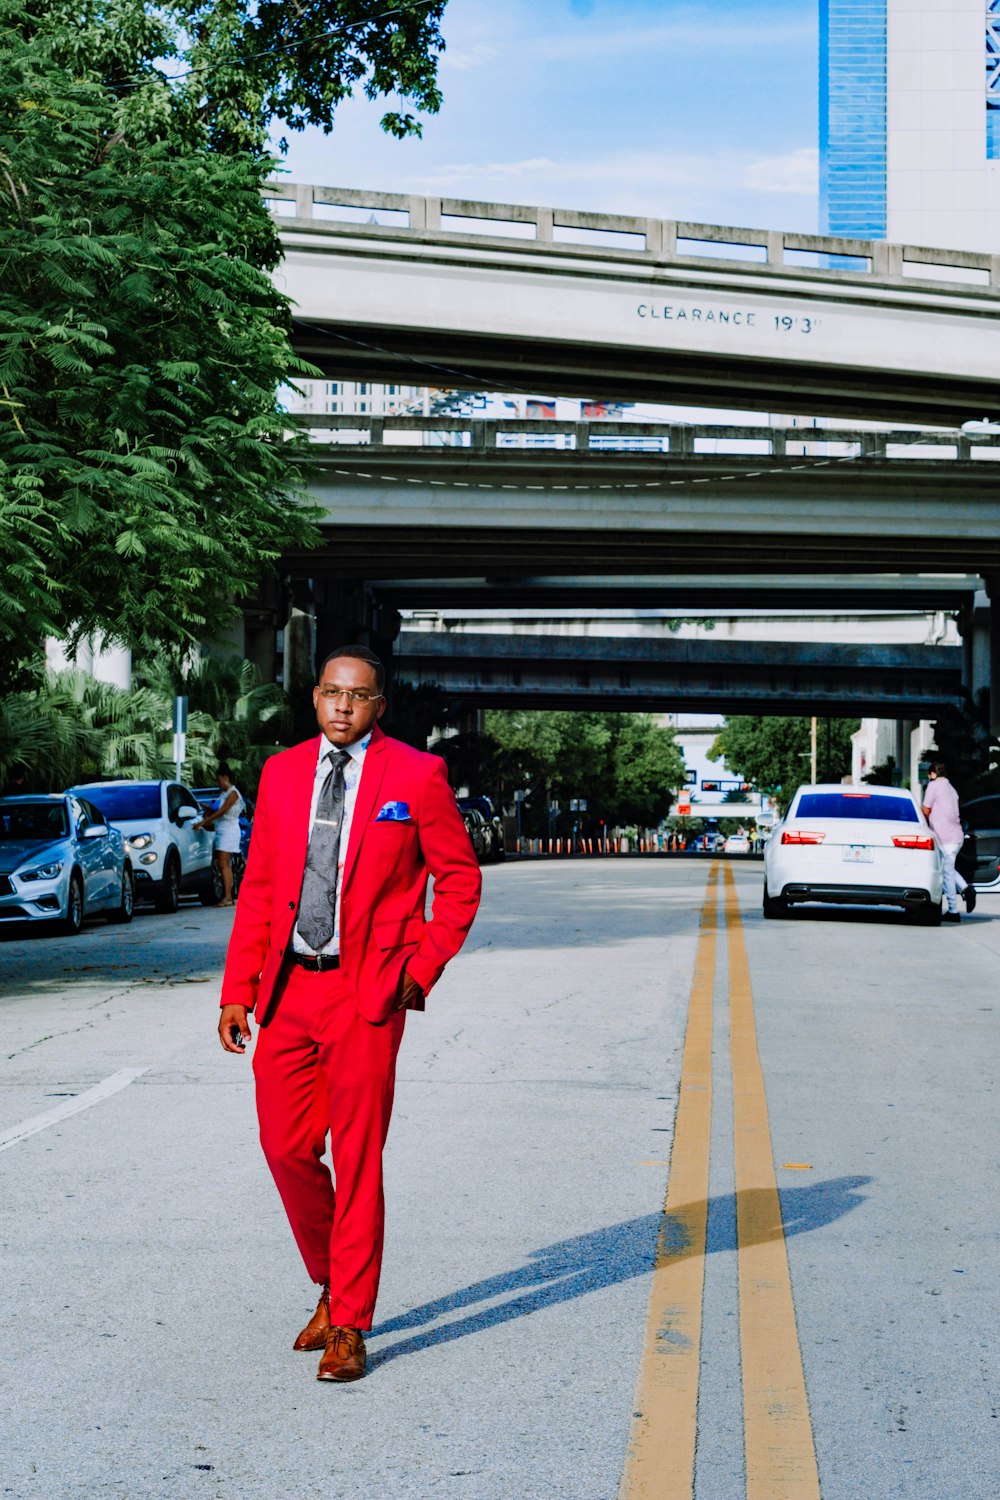 Mann im roten Anzug tagsüber auf dem Bürgersteig